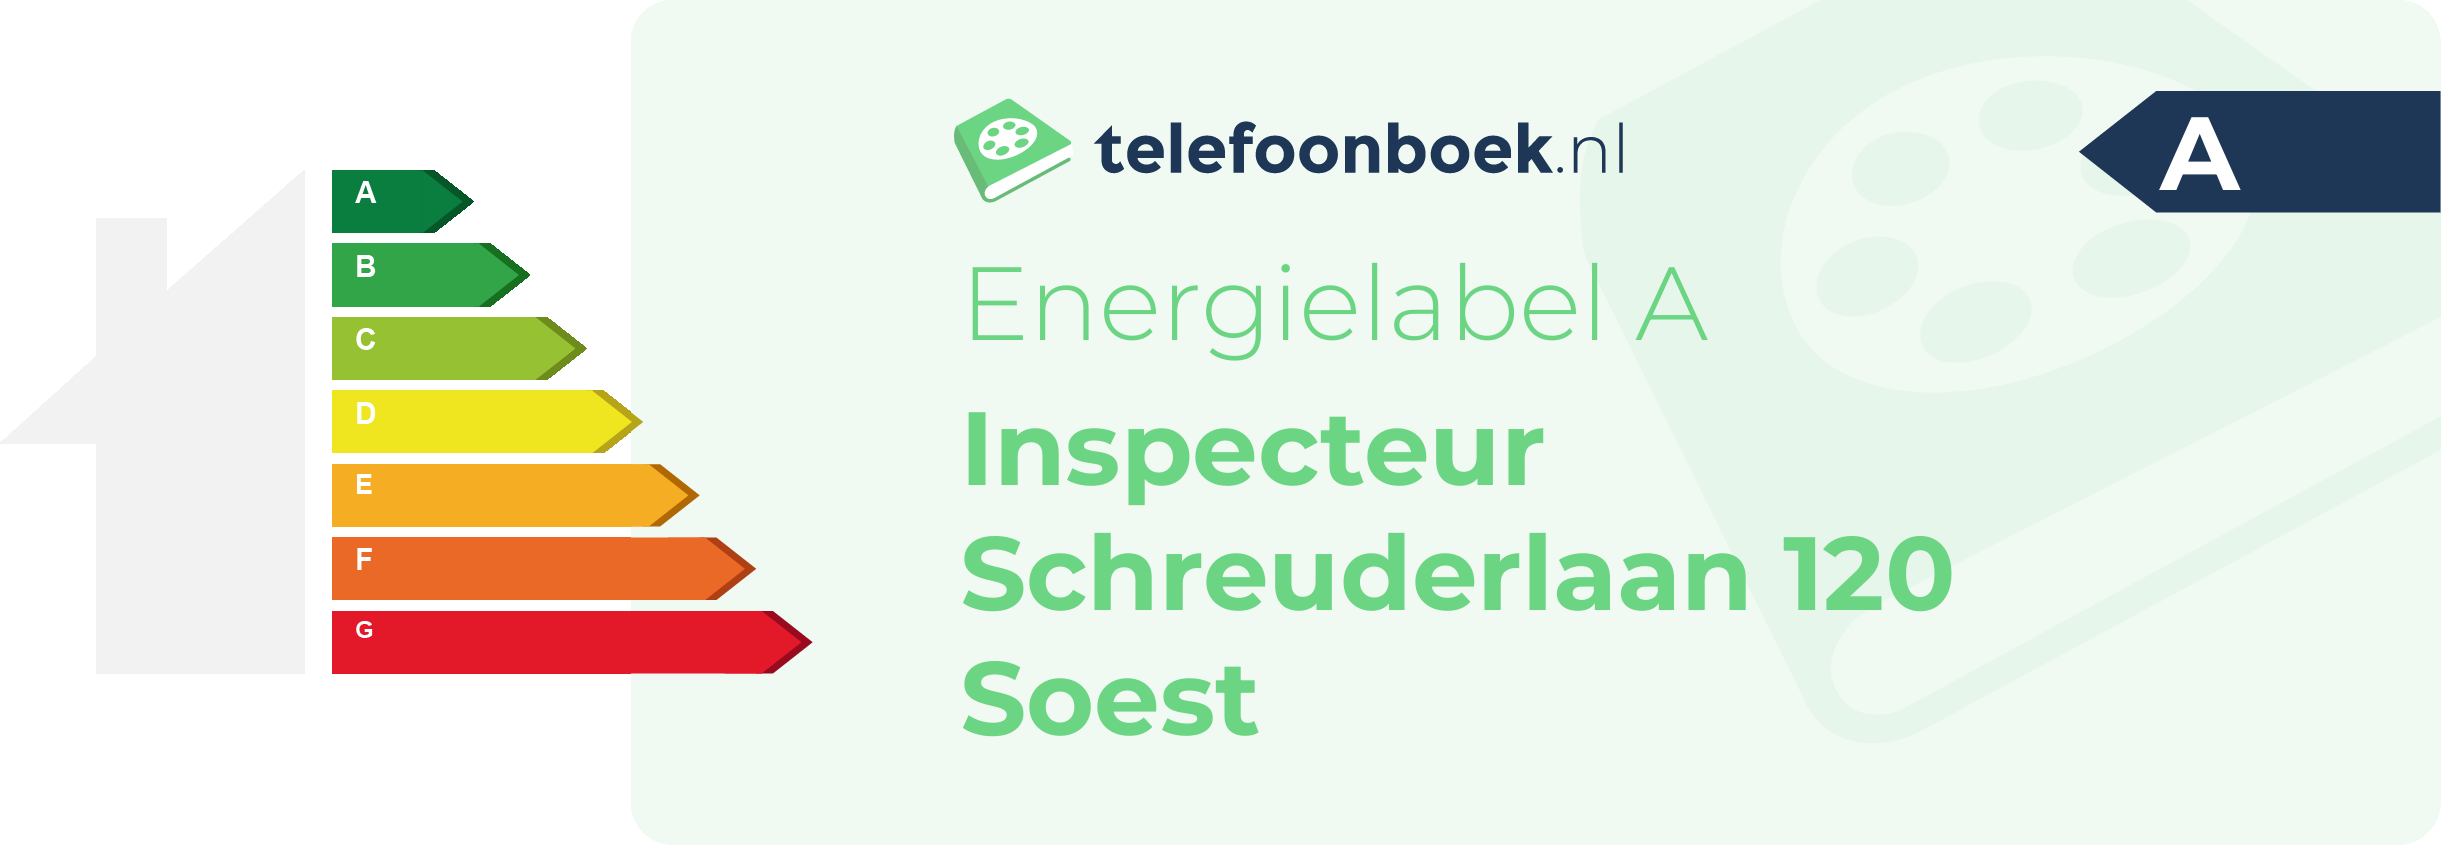 Energielabel Inspecteur Schreuderlaan 120 Soest